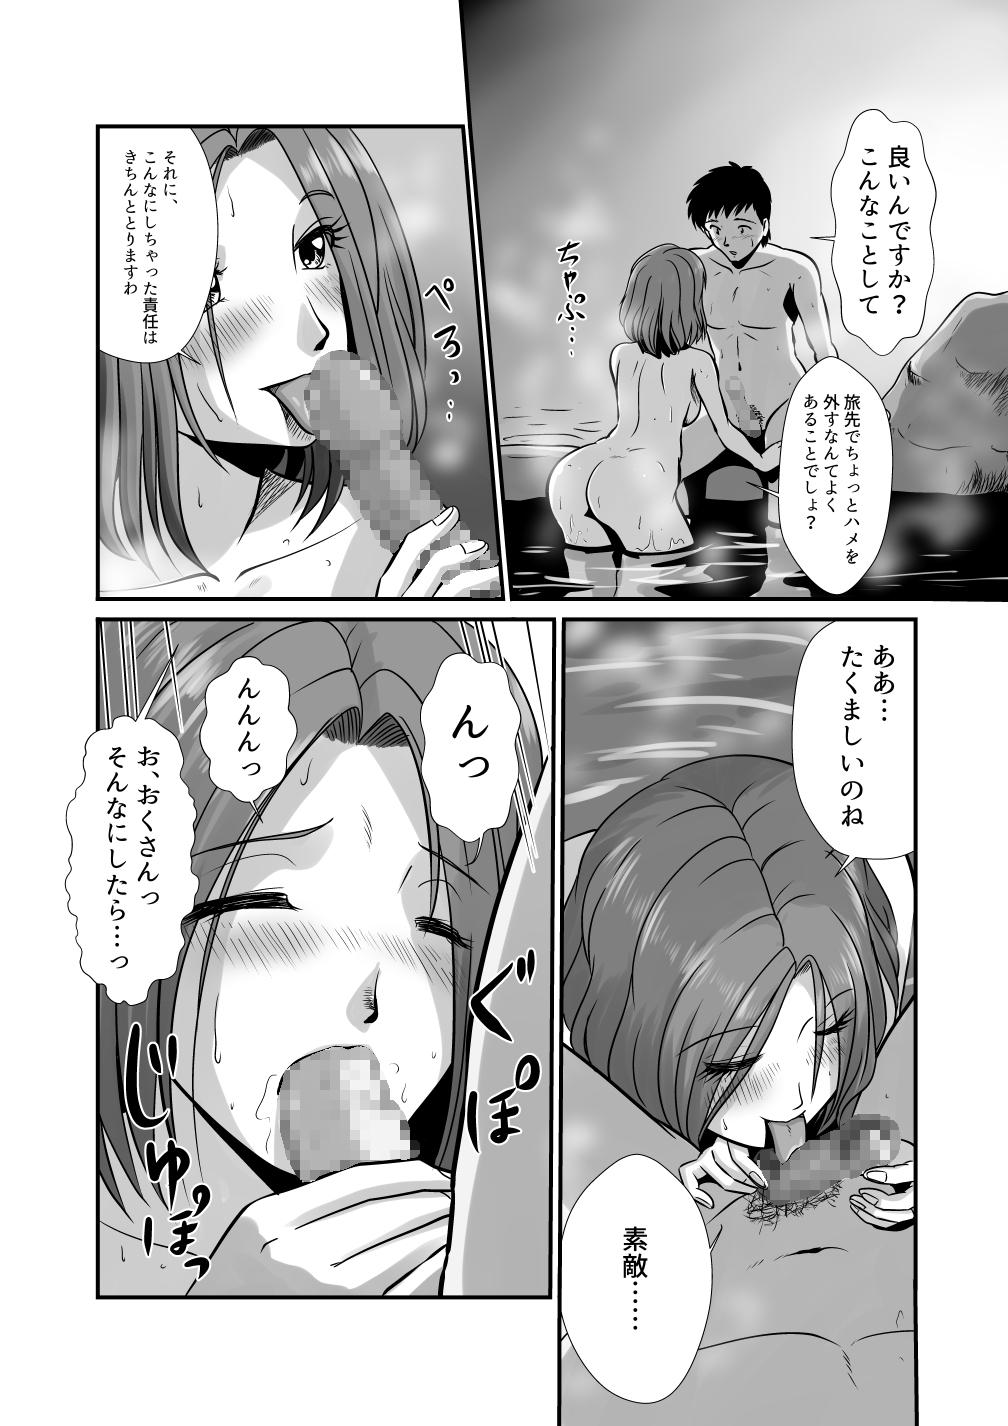 Shot Yunohana no Ka - Original Abuse - Page 5